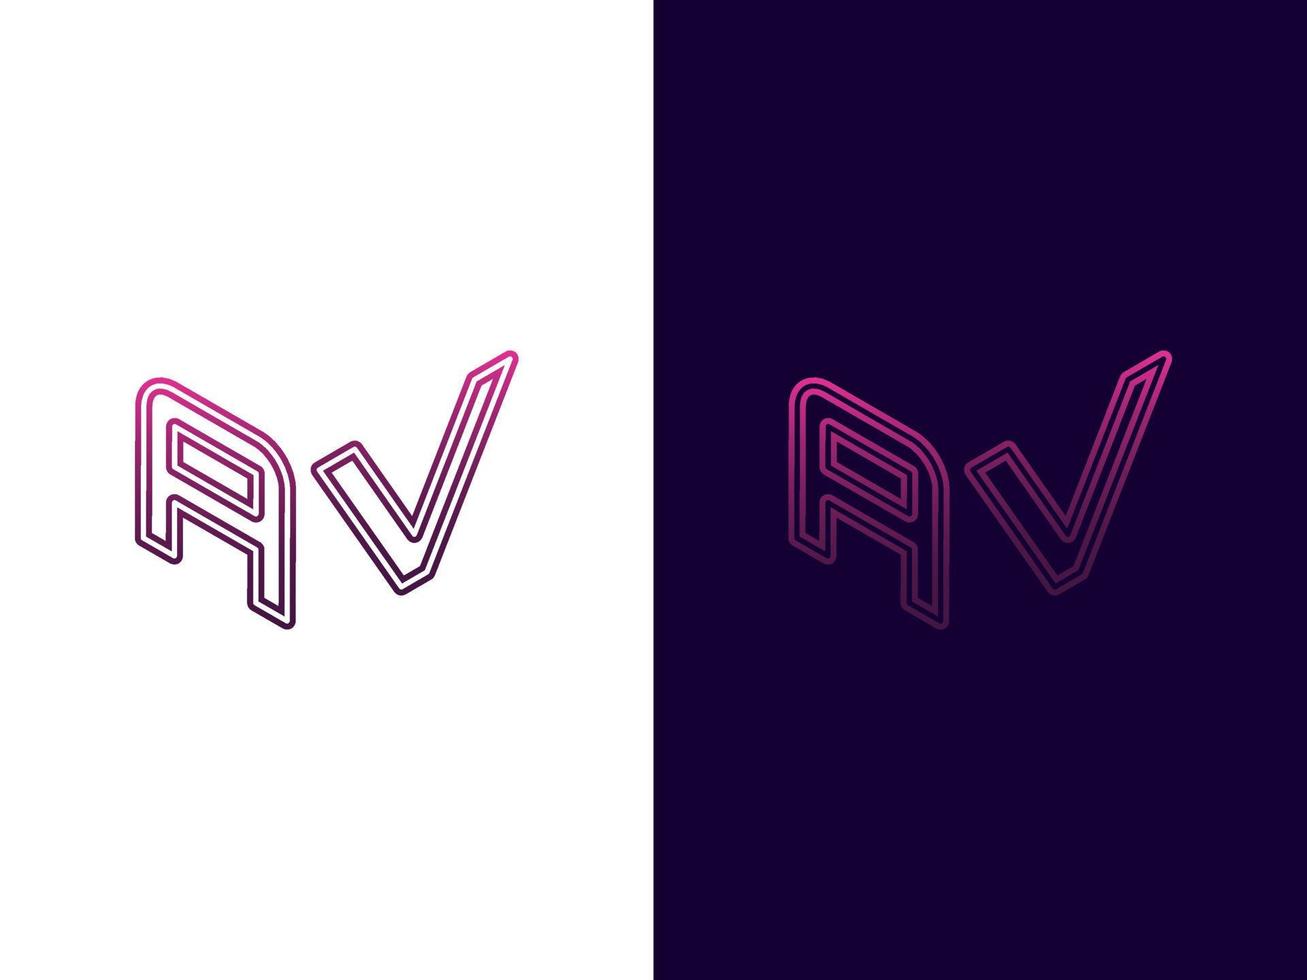 Initial letter AV minimalist and modern 3D logo design vector